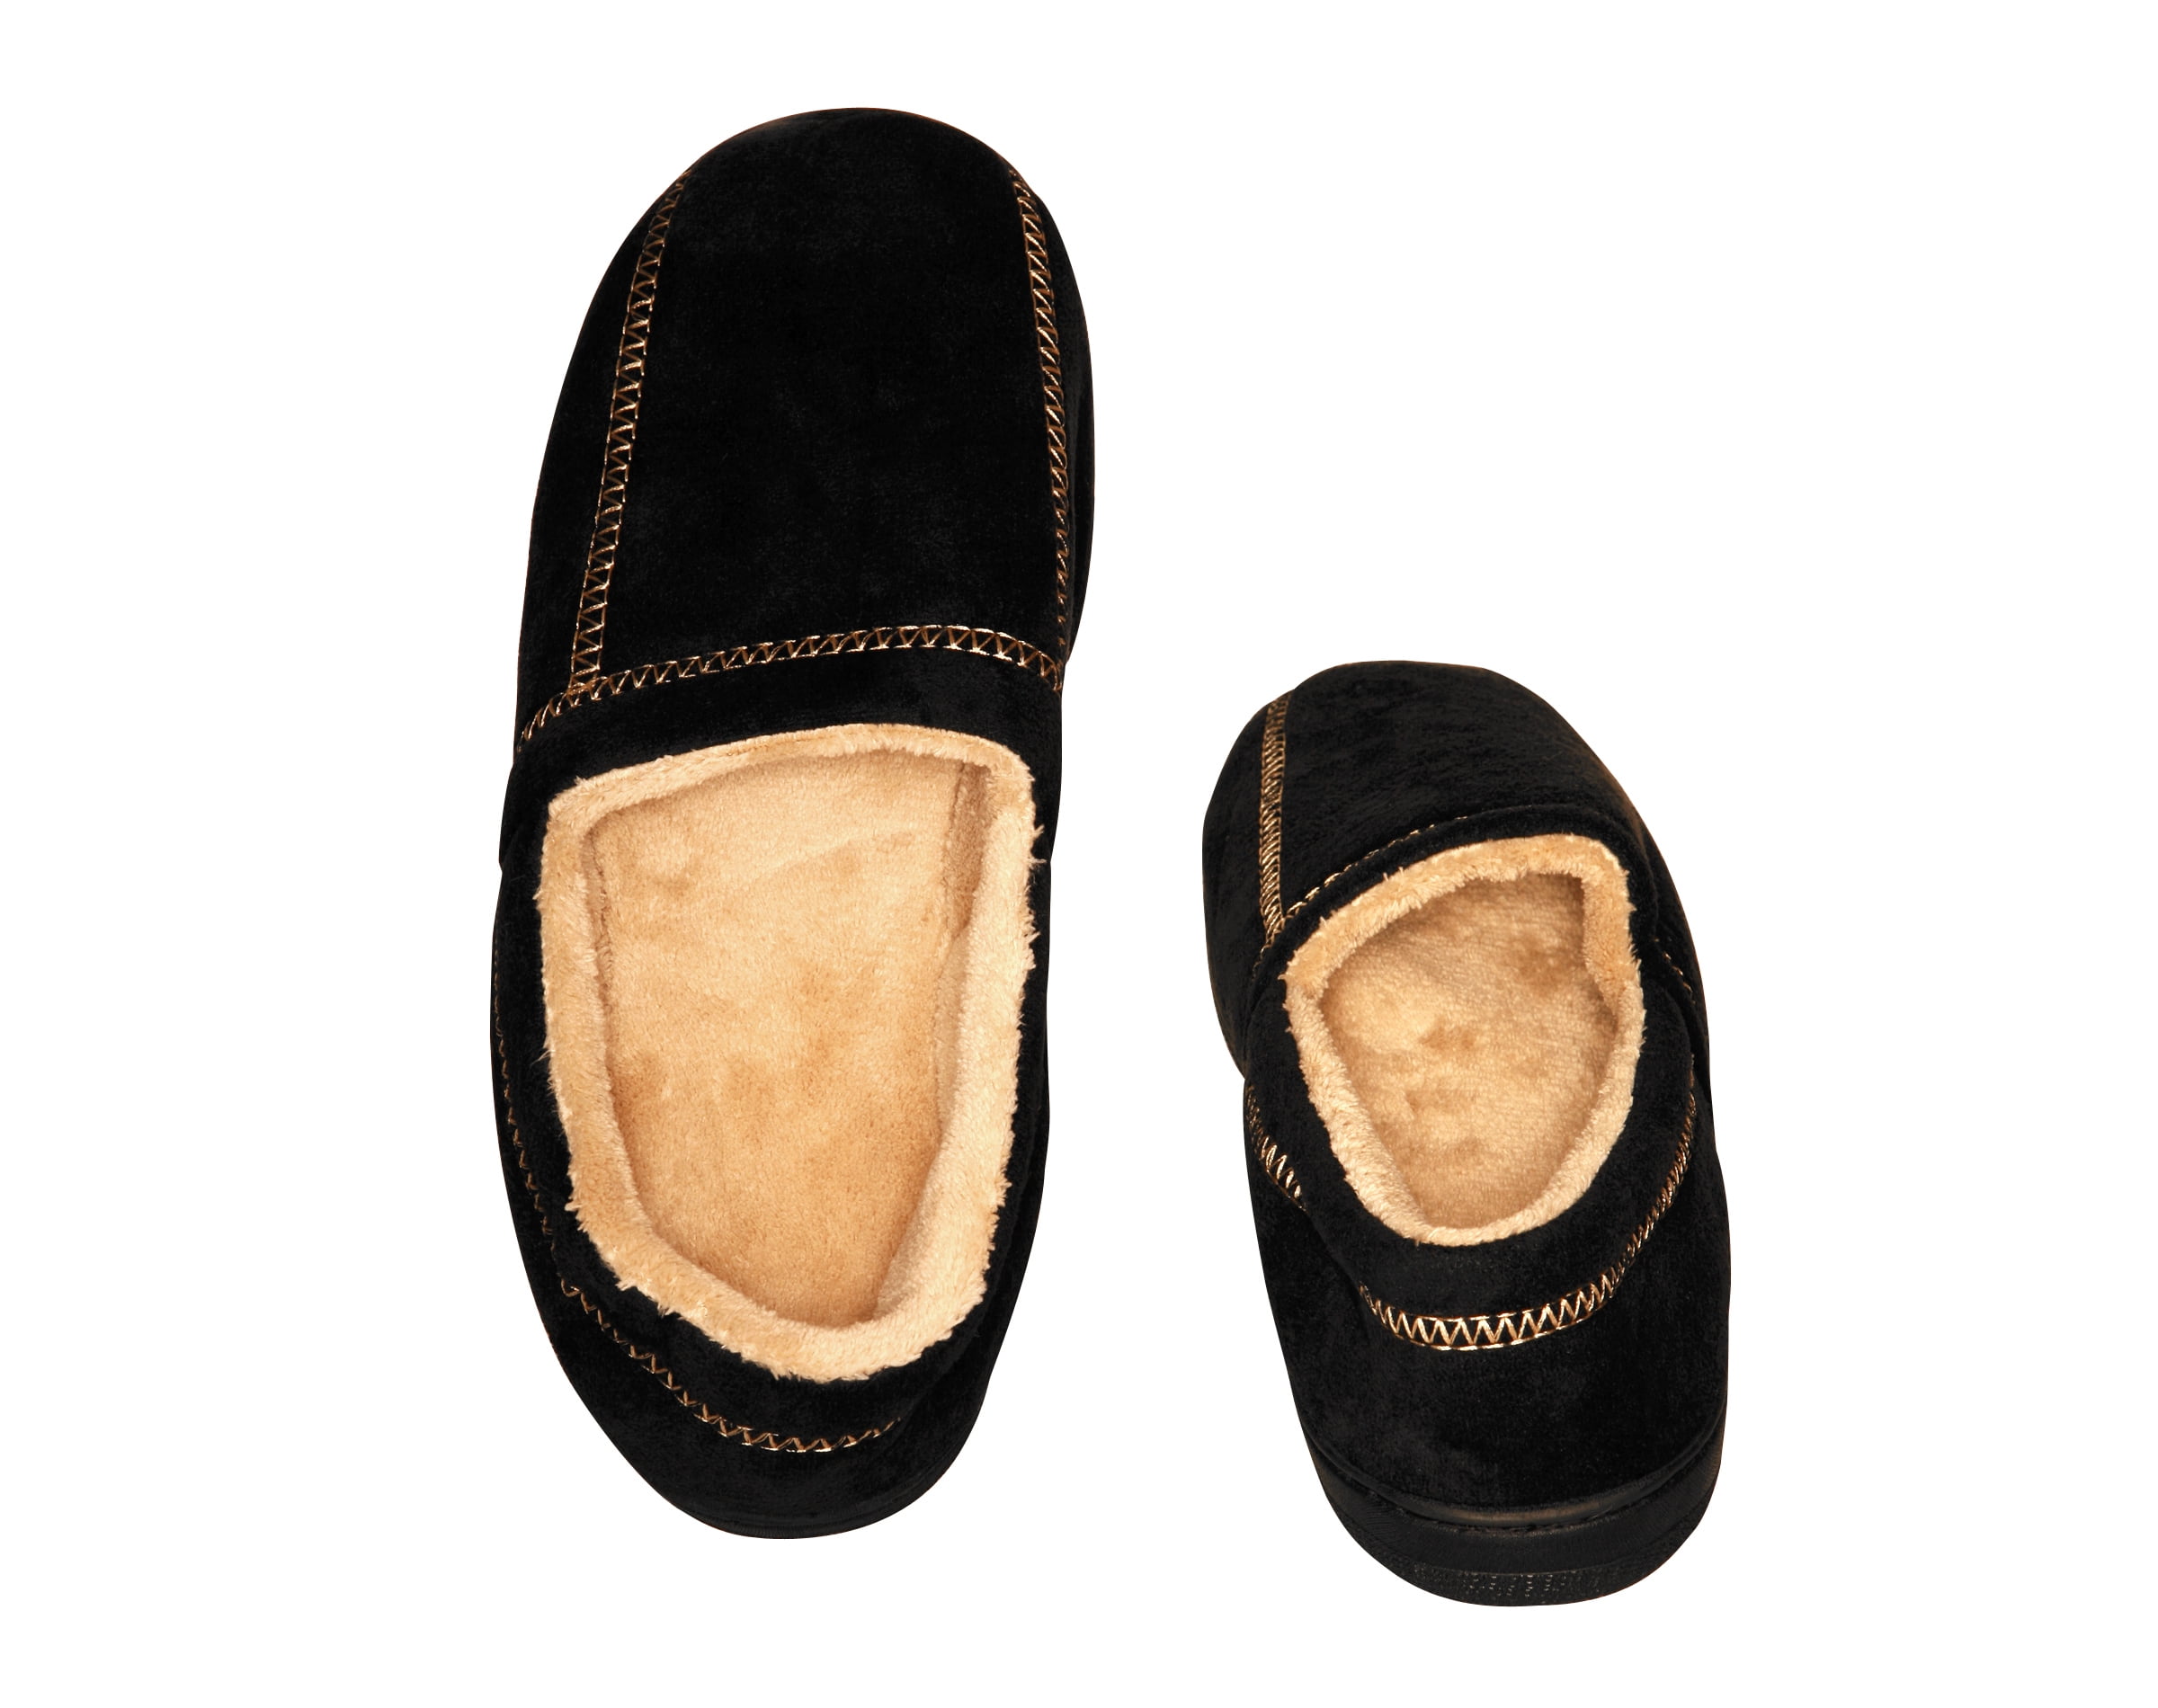 Fortolke Fantastiske mm Deluxe Comfort Modern Moccasin Memory Foam Men's Slipper, Size 13-14 –  Stylish Microsuede – Long-Lasting Memory Foam – Warm Fleece Lining – Men's  Slippers, Black - Walmart.com